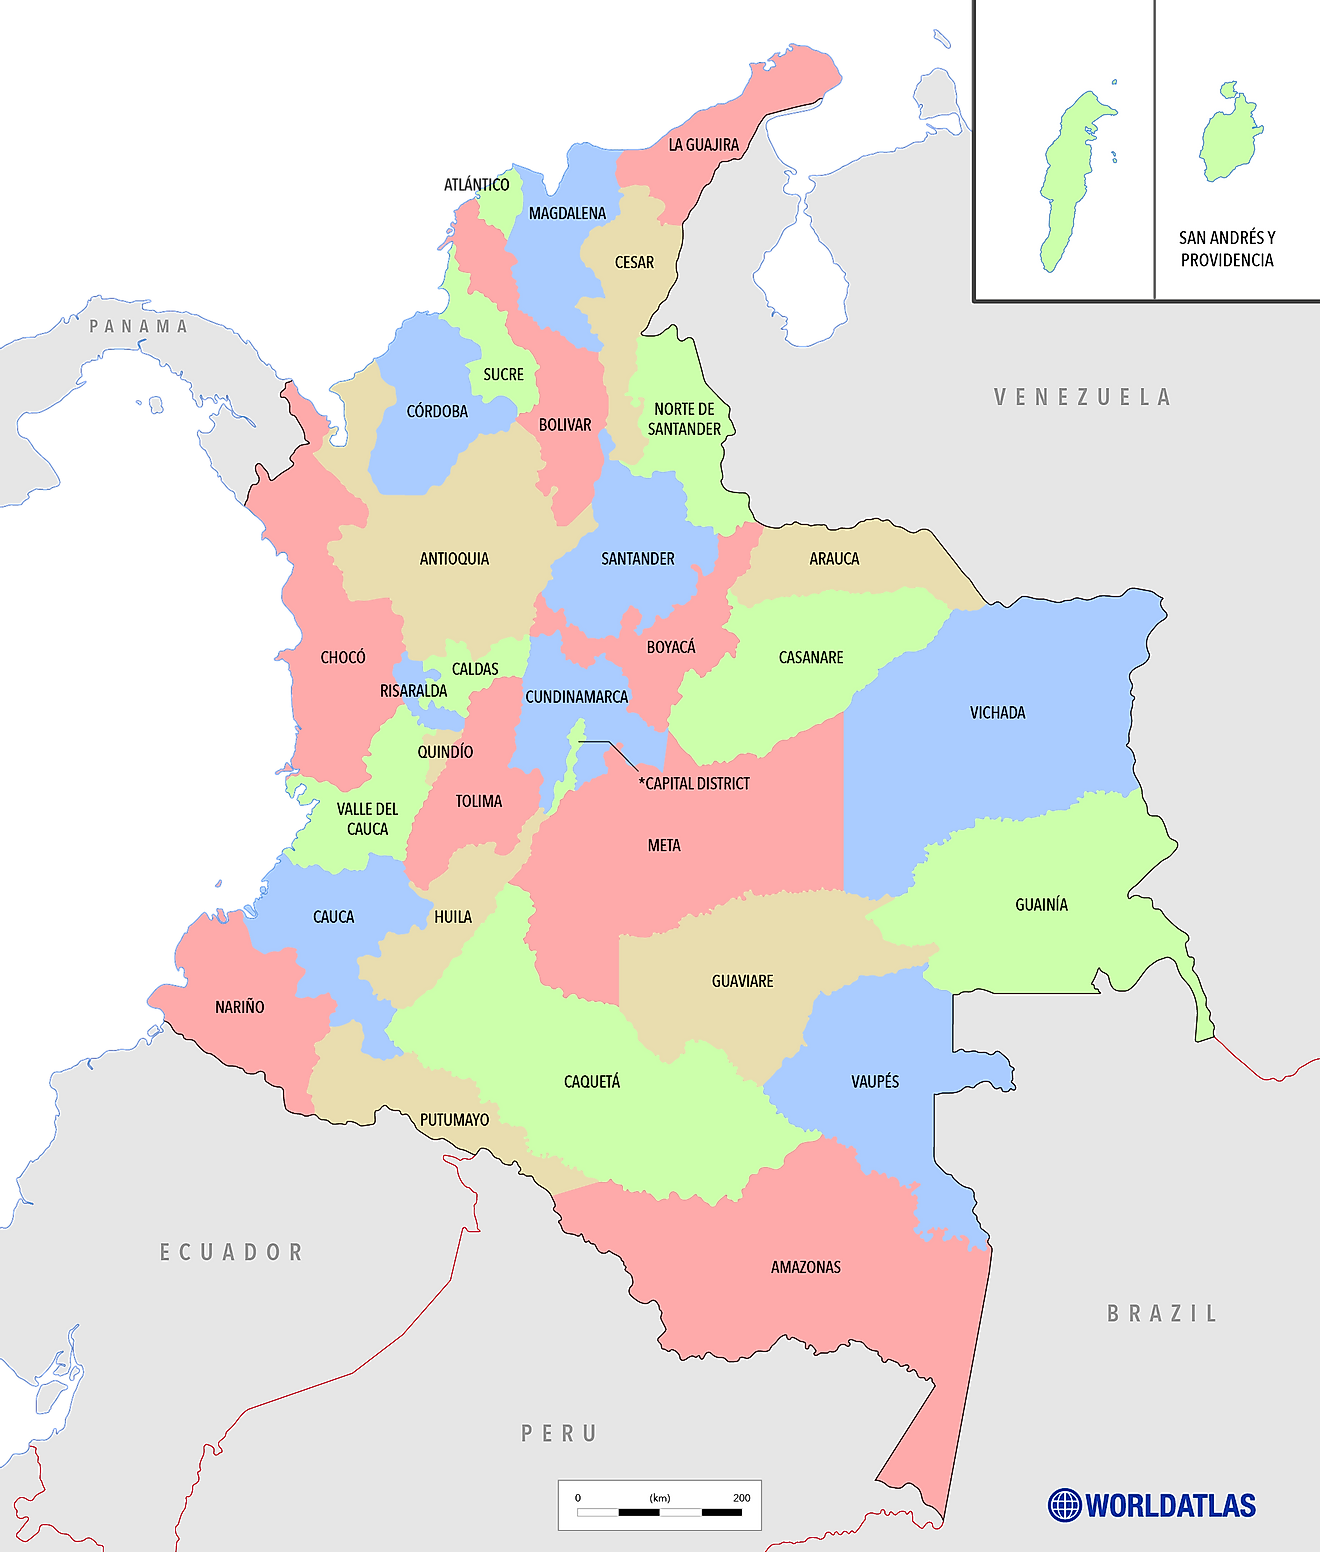 Mapa Político de Colombia mostrando sus 32 departamentos y el distrito capital - Bogotá